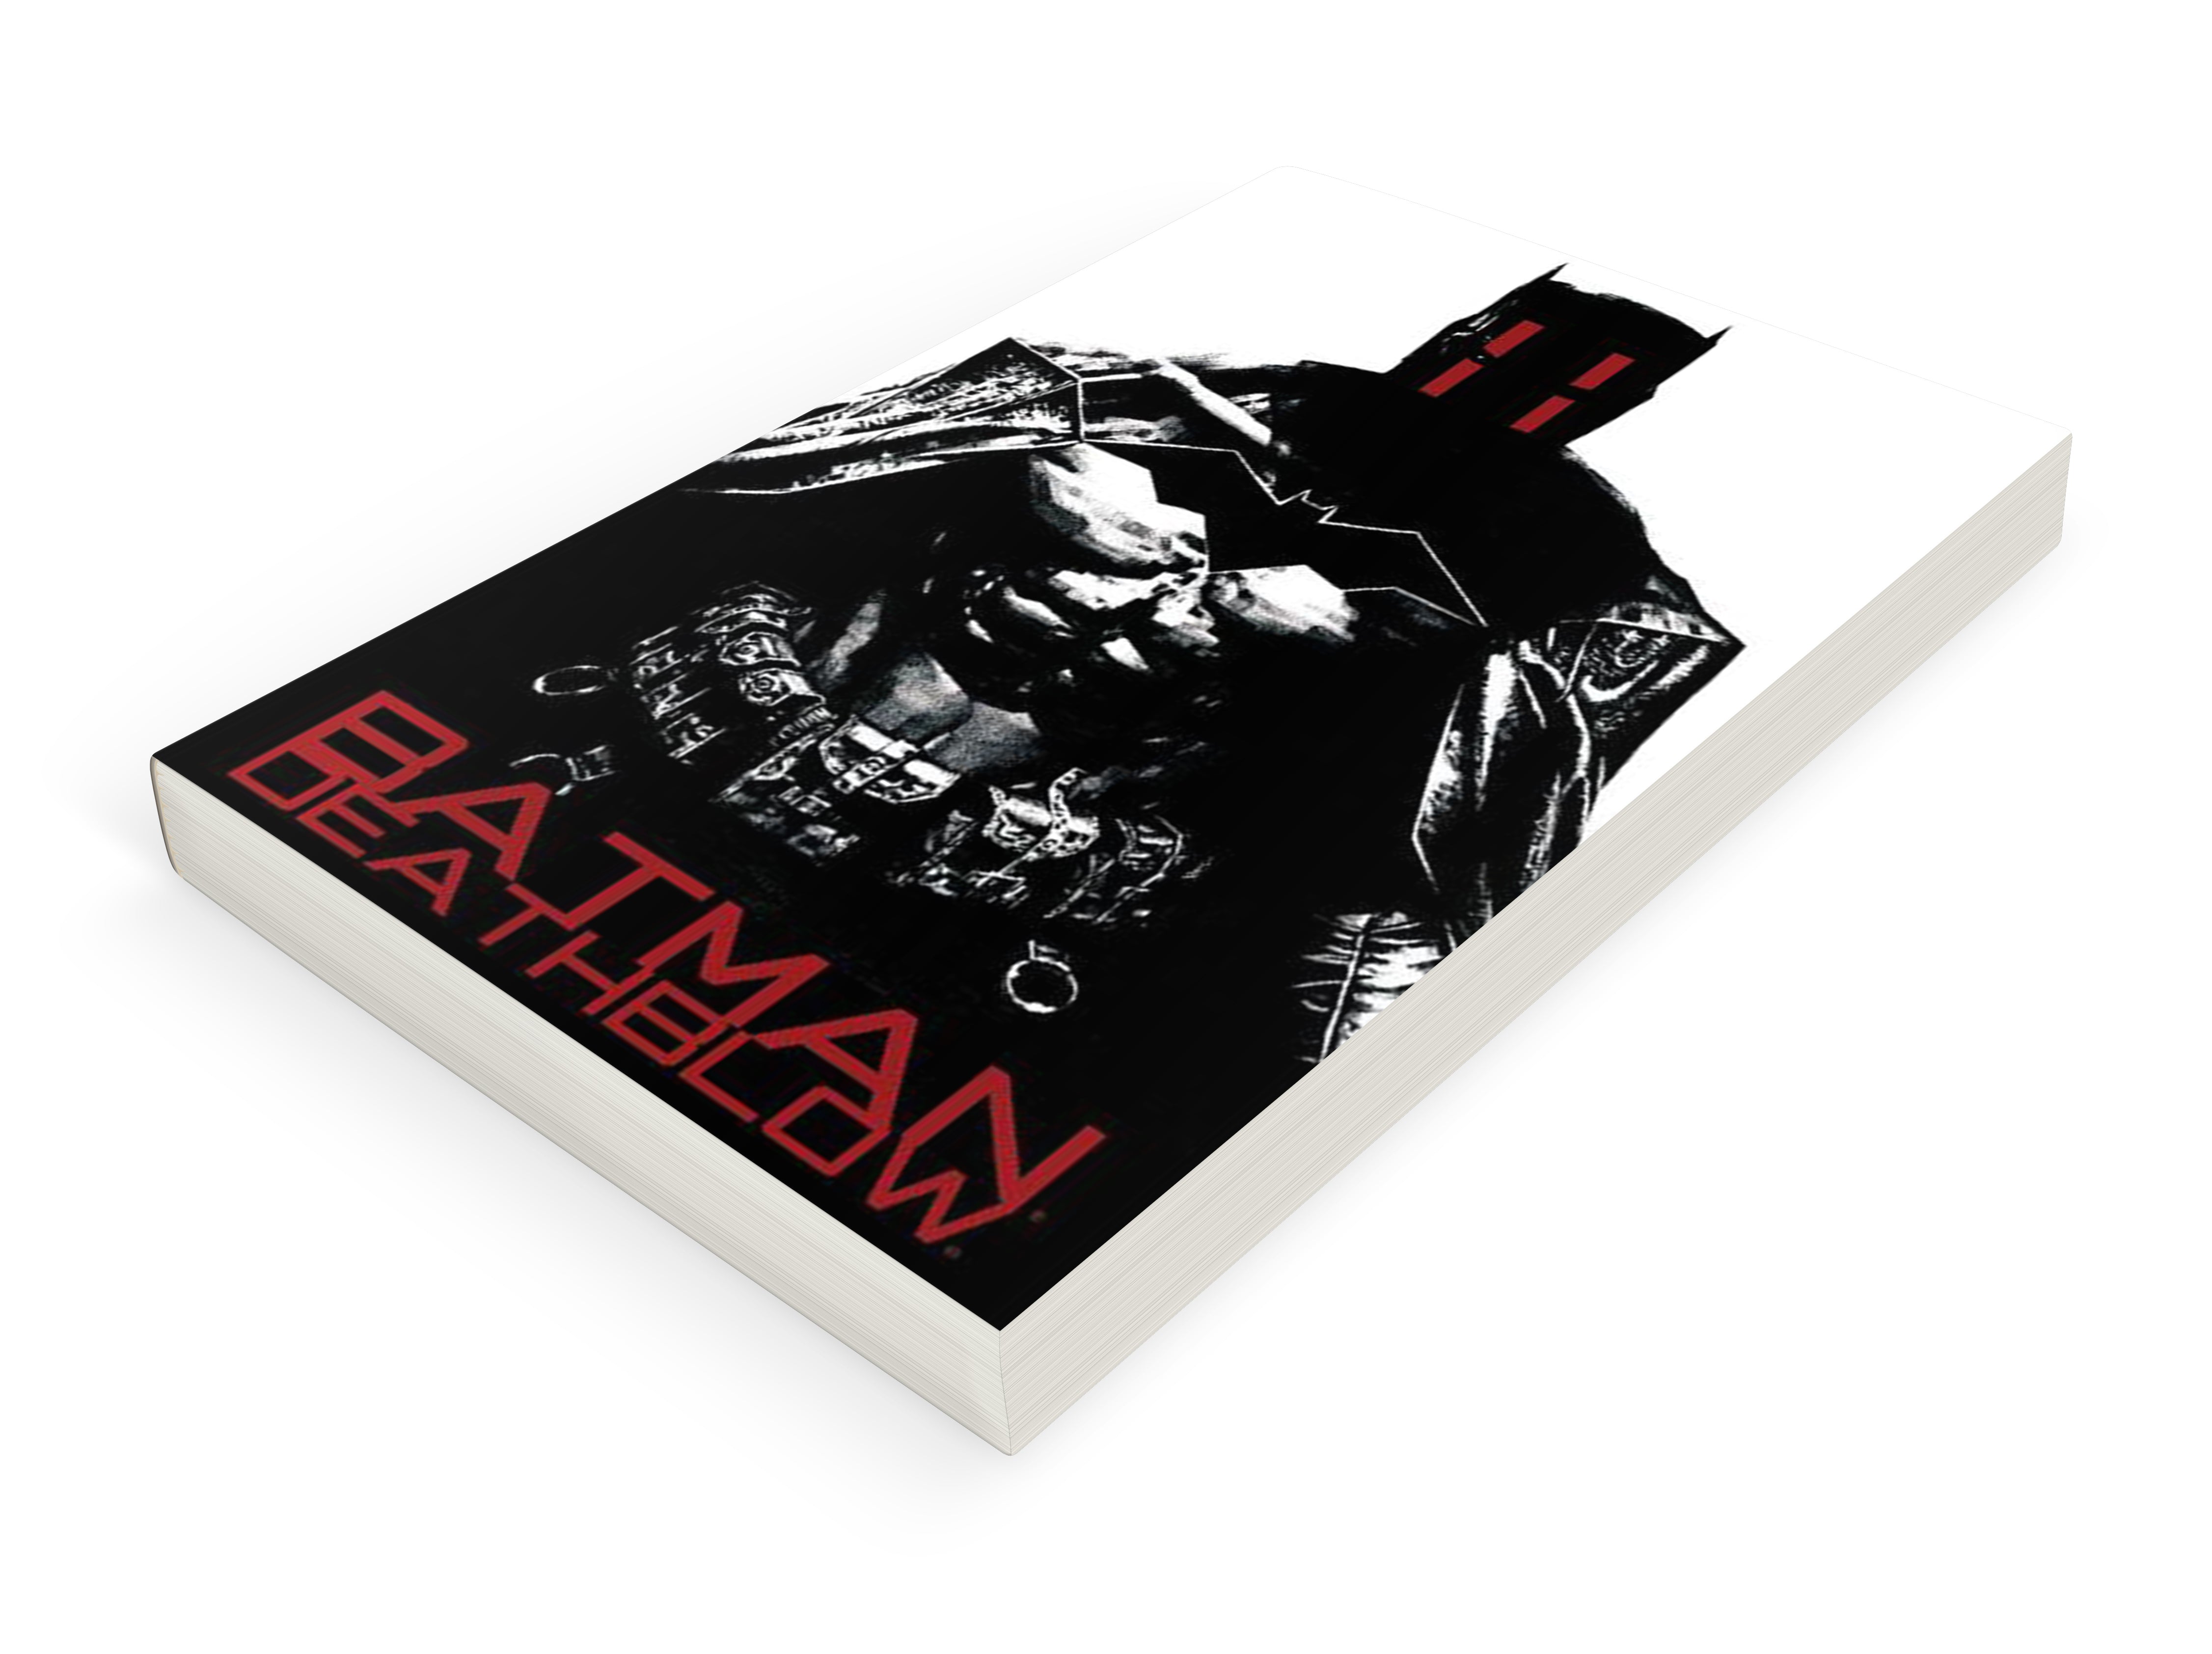 BATMAN – DEATHBLOW: AFTER THE FIRE